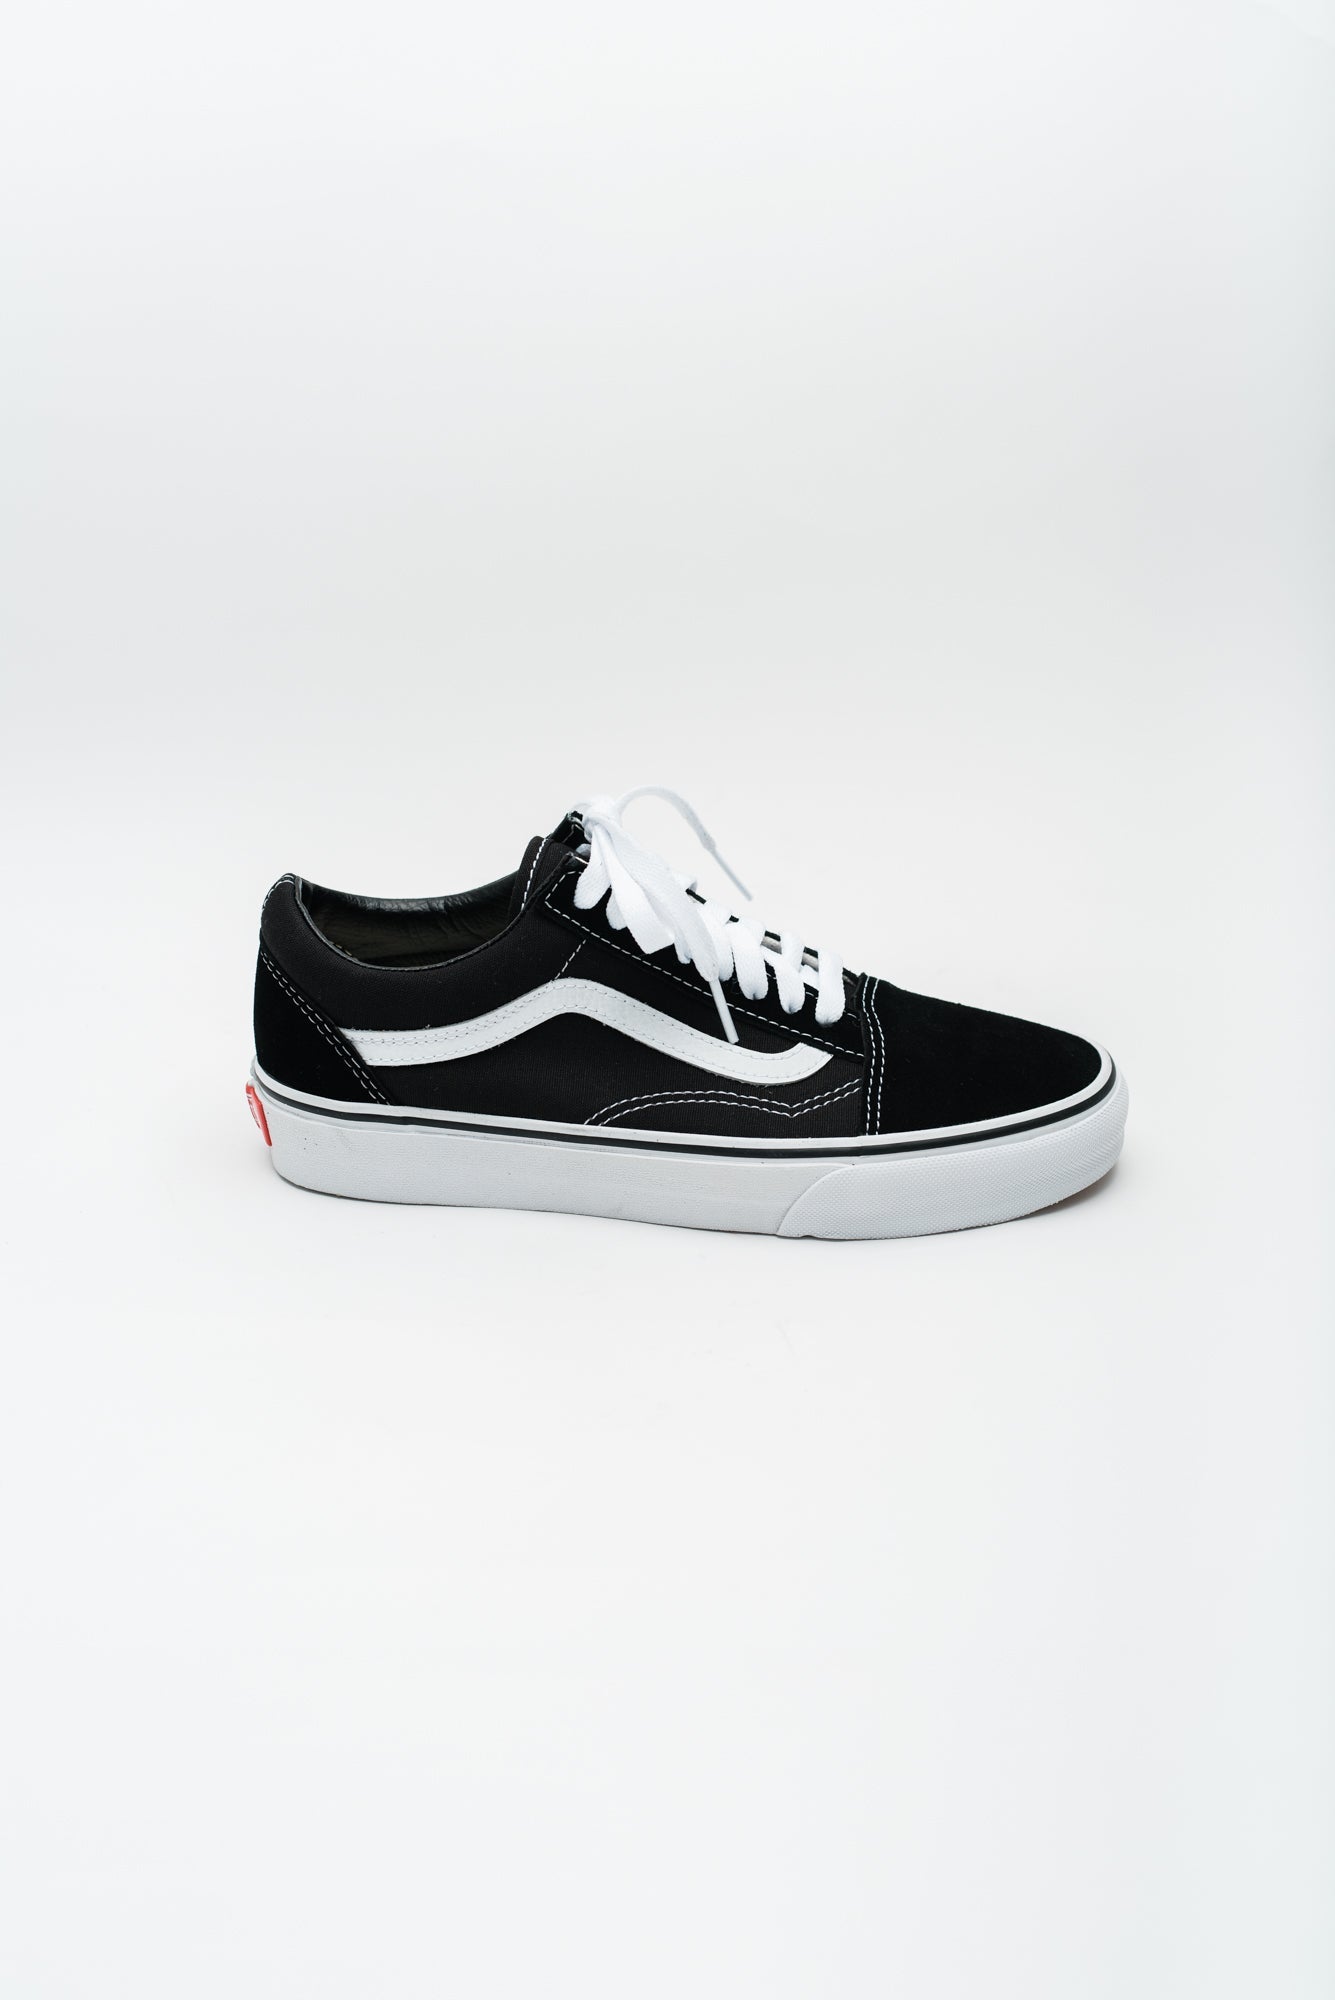 Load image into Gallery viewer, Vans Women&amp;#39;s Old Skool Sneakers - Black/White
